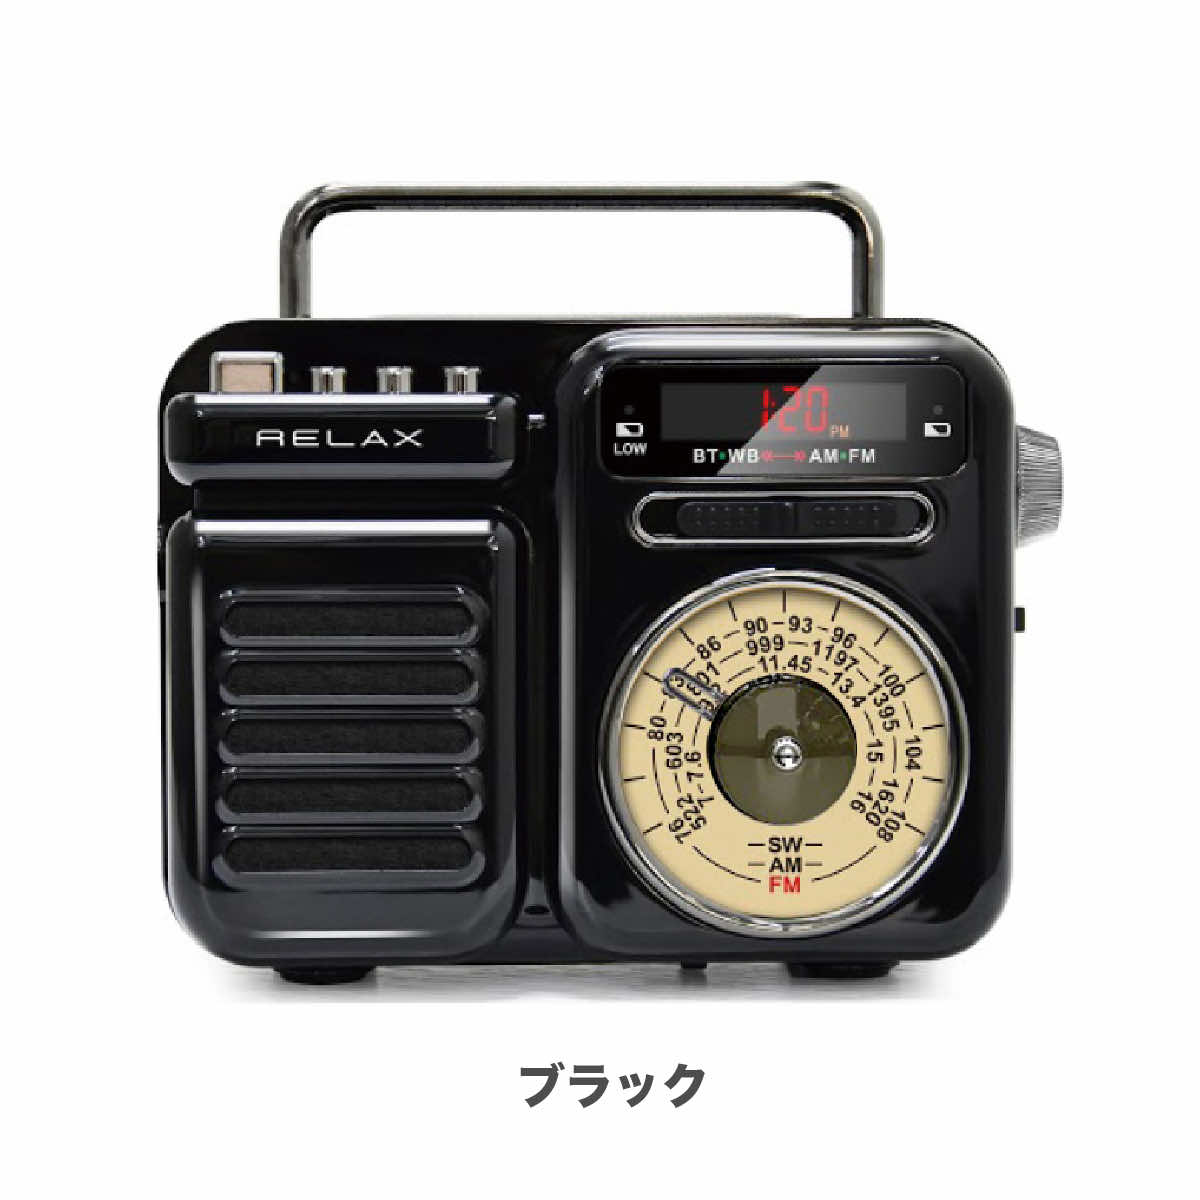 マルチレトロラジオ レトロ ラジオ ワイヤレススピーカー RELAX ラジオ 